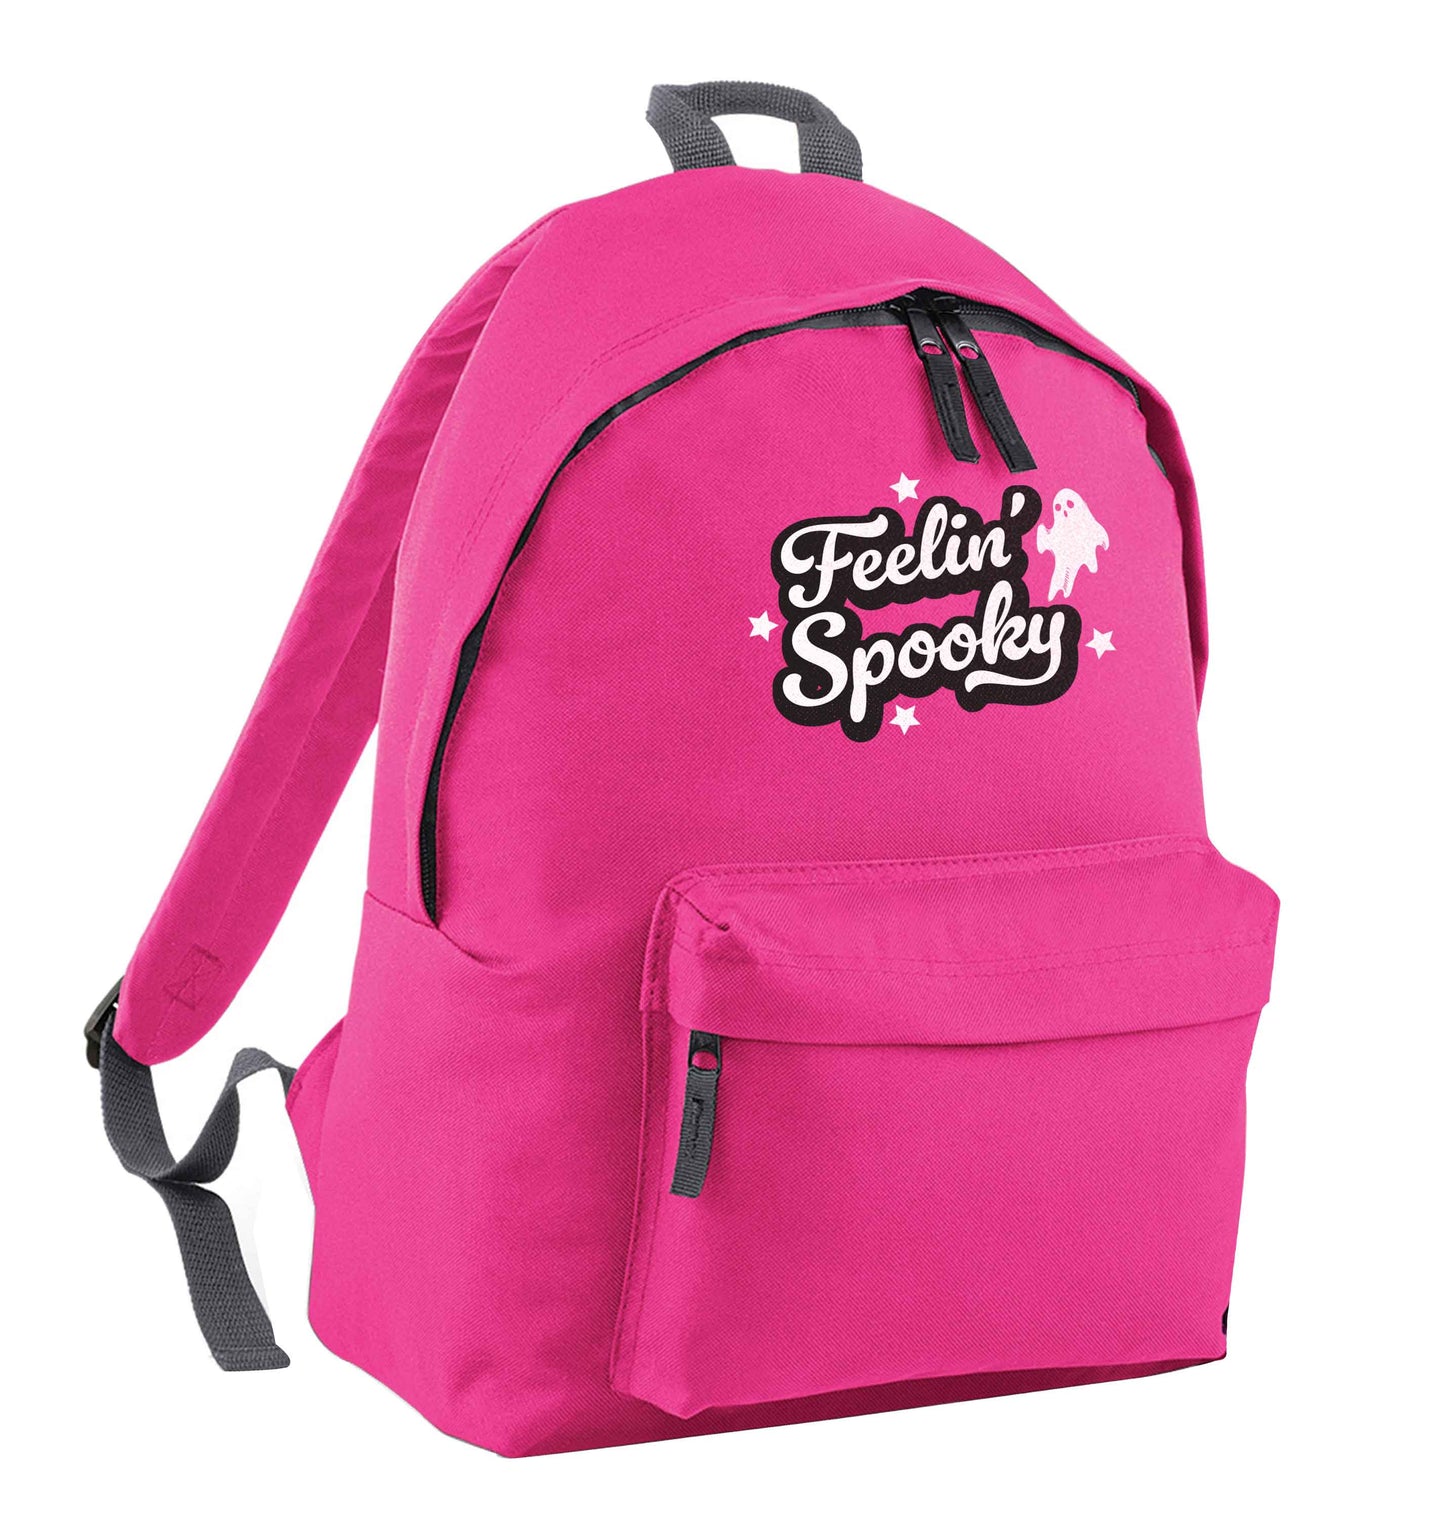 Feelin' Spooky Kit pink children's backpack